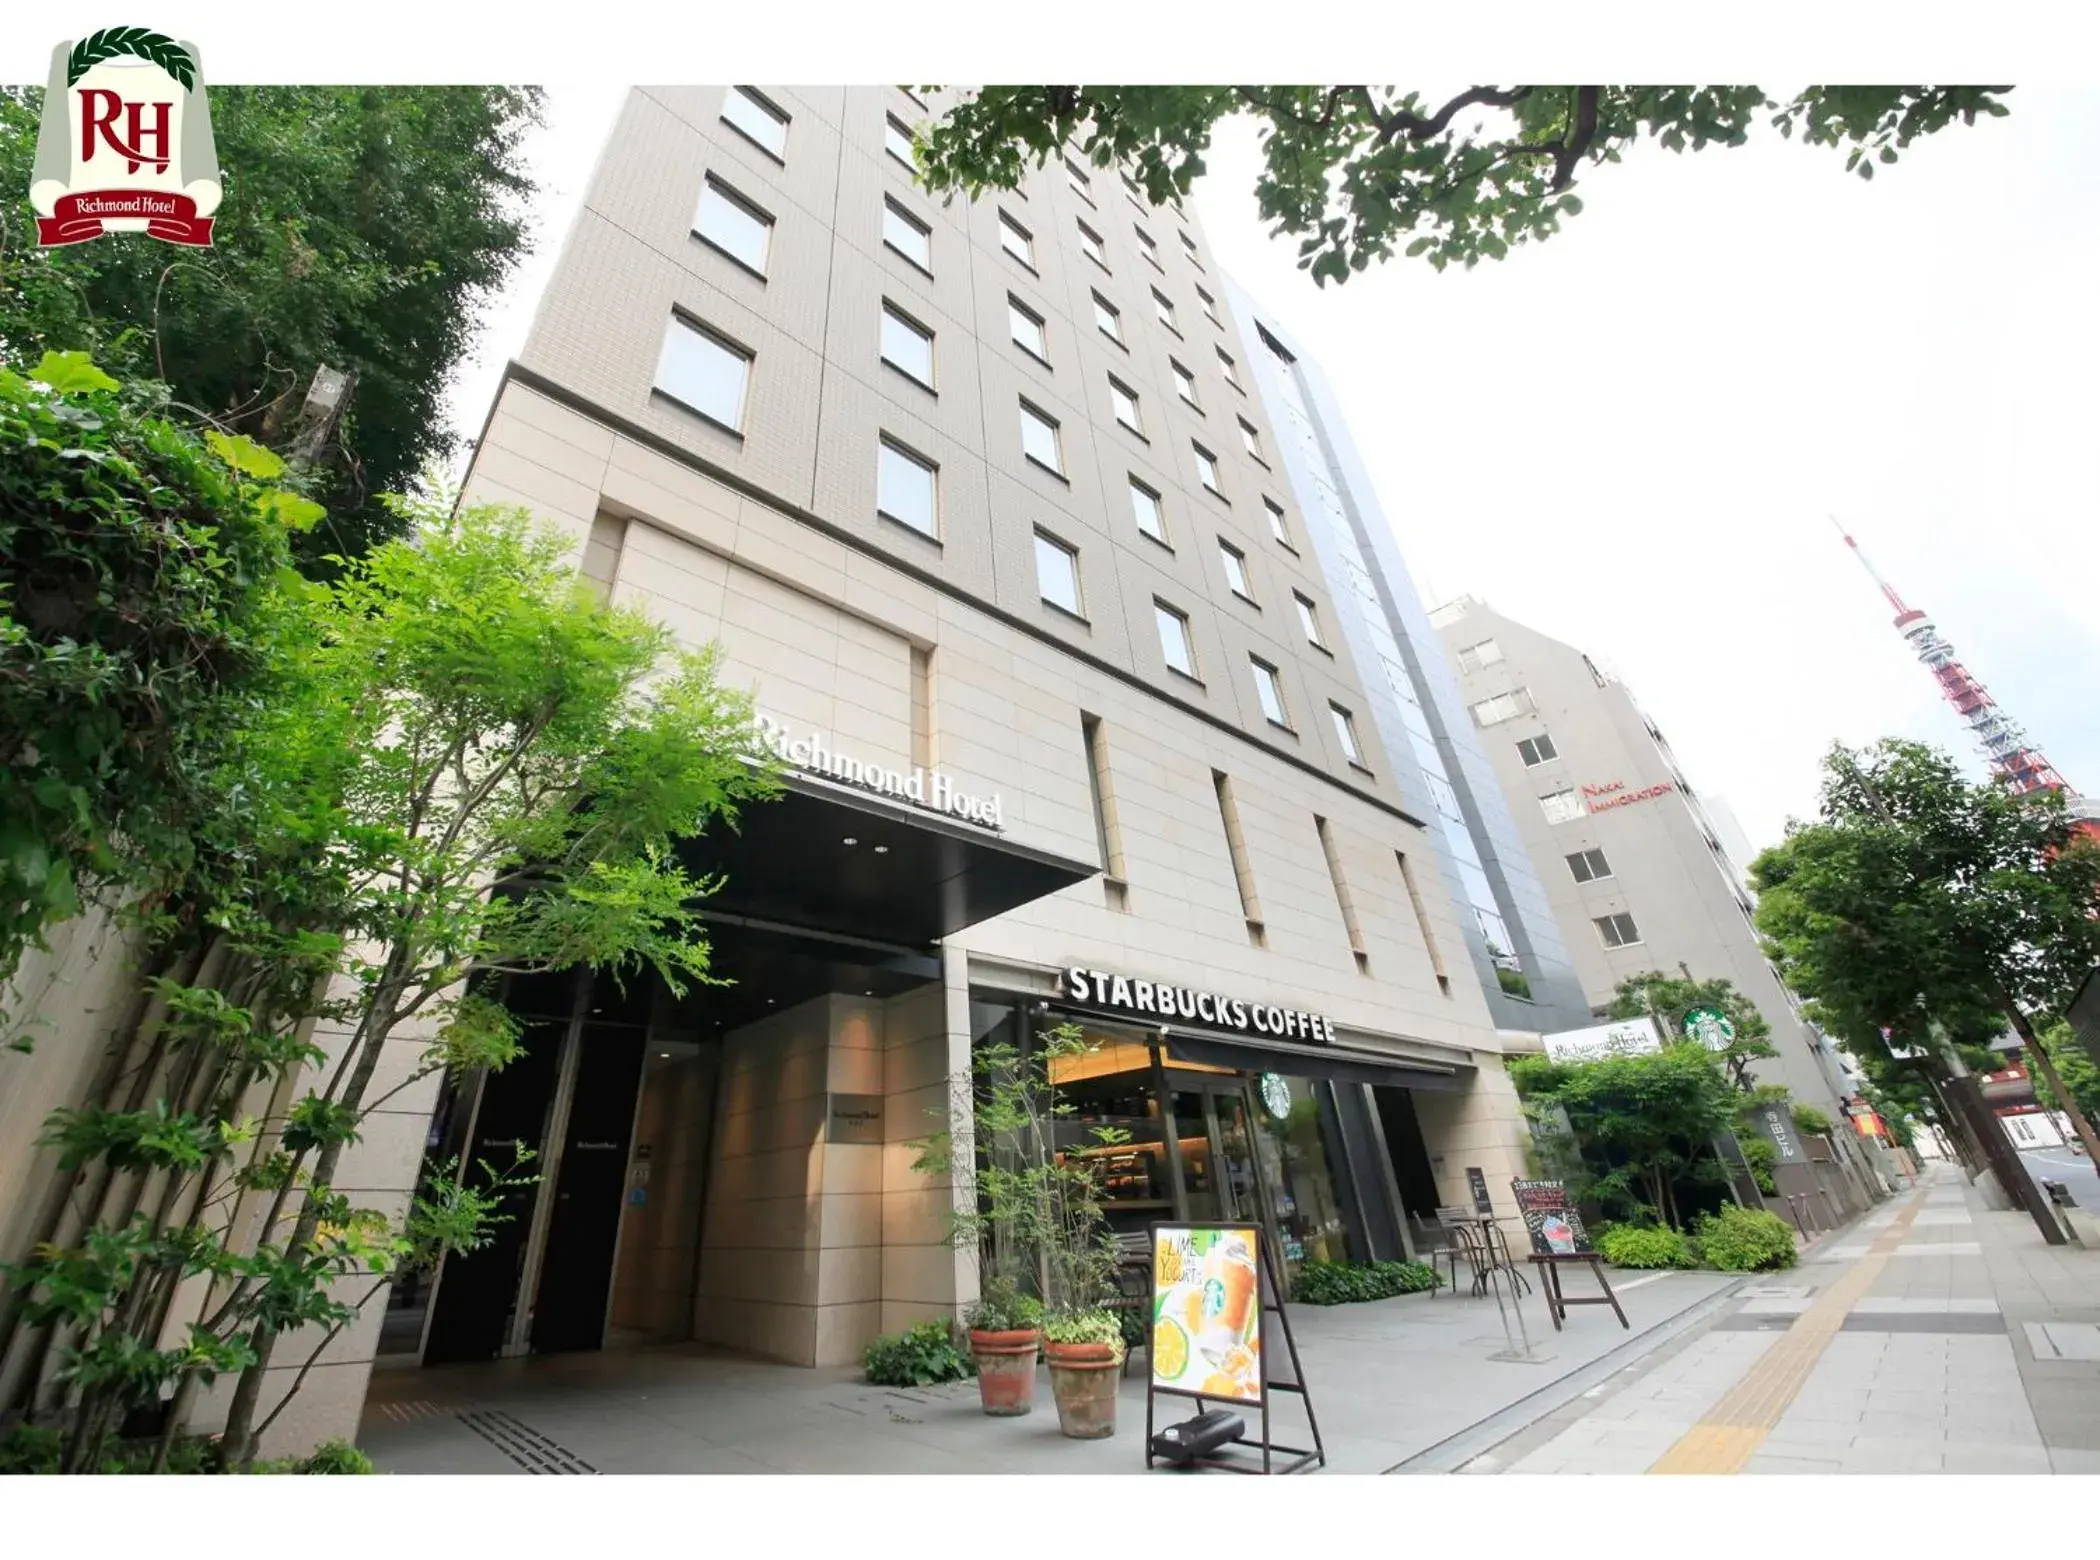 Facade/entrance, Property Building in Richmond Hotel Tokyo Shiba